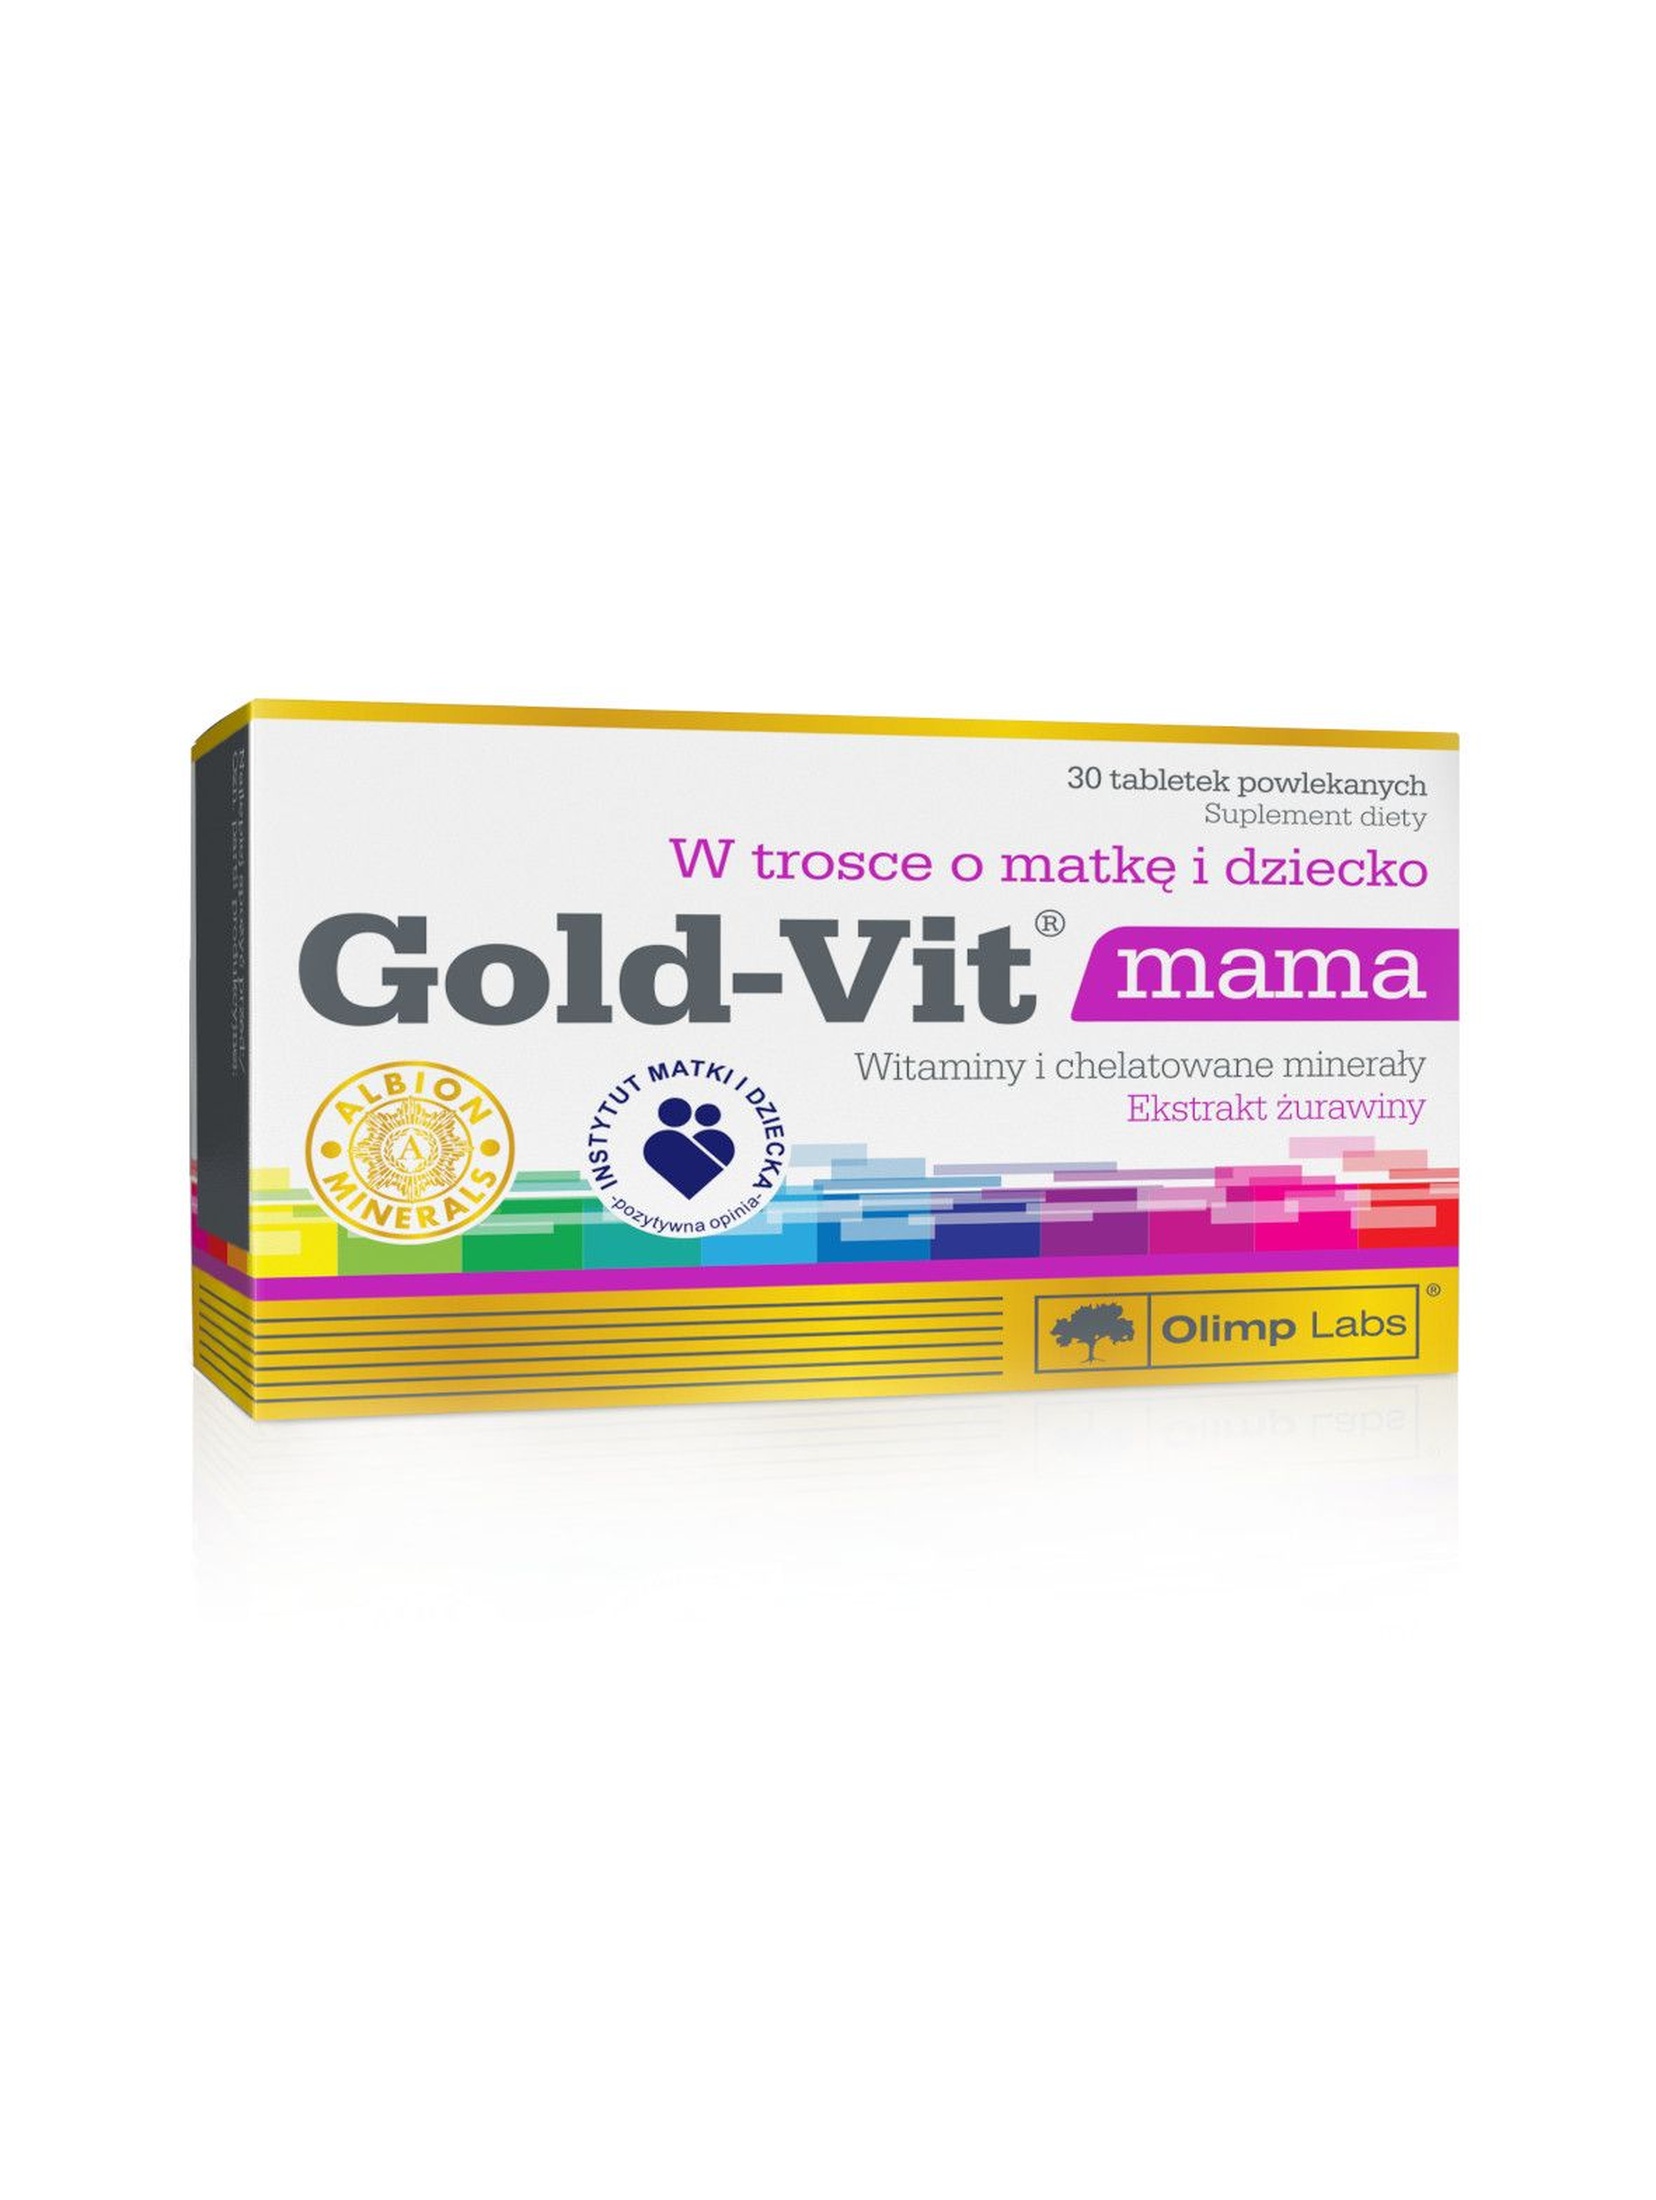 Gold-Vit mama 30 tabletek